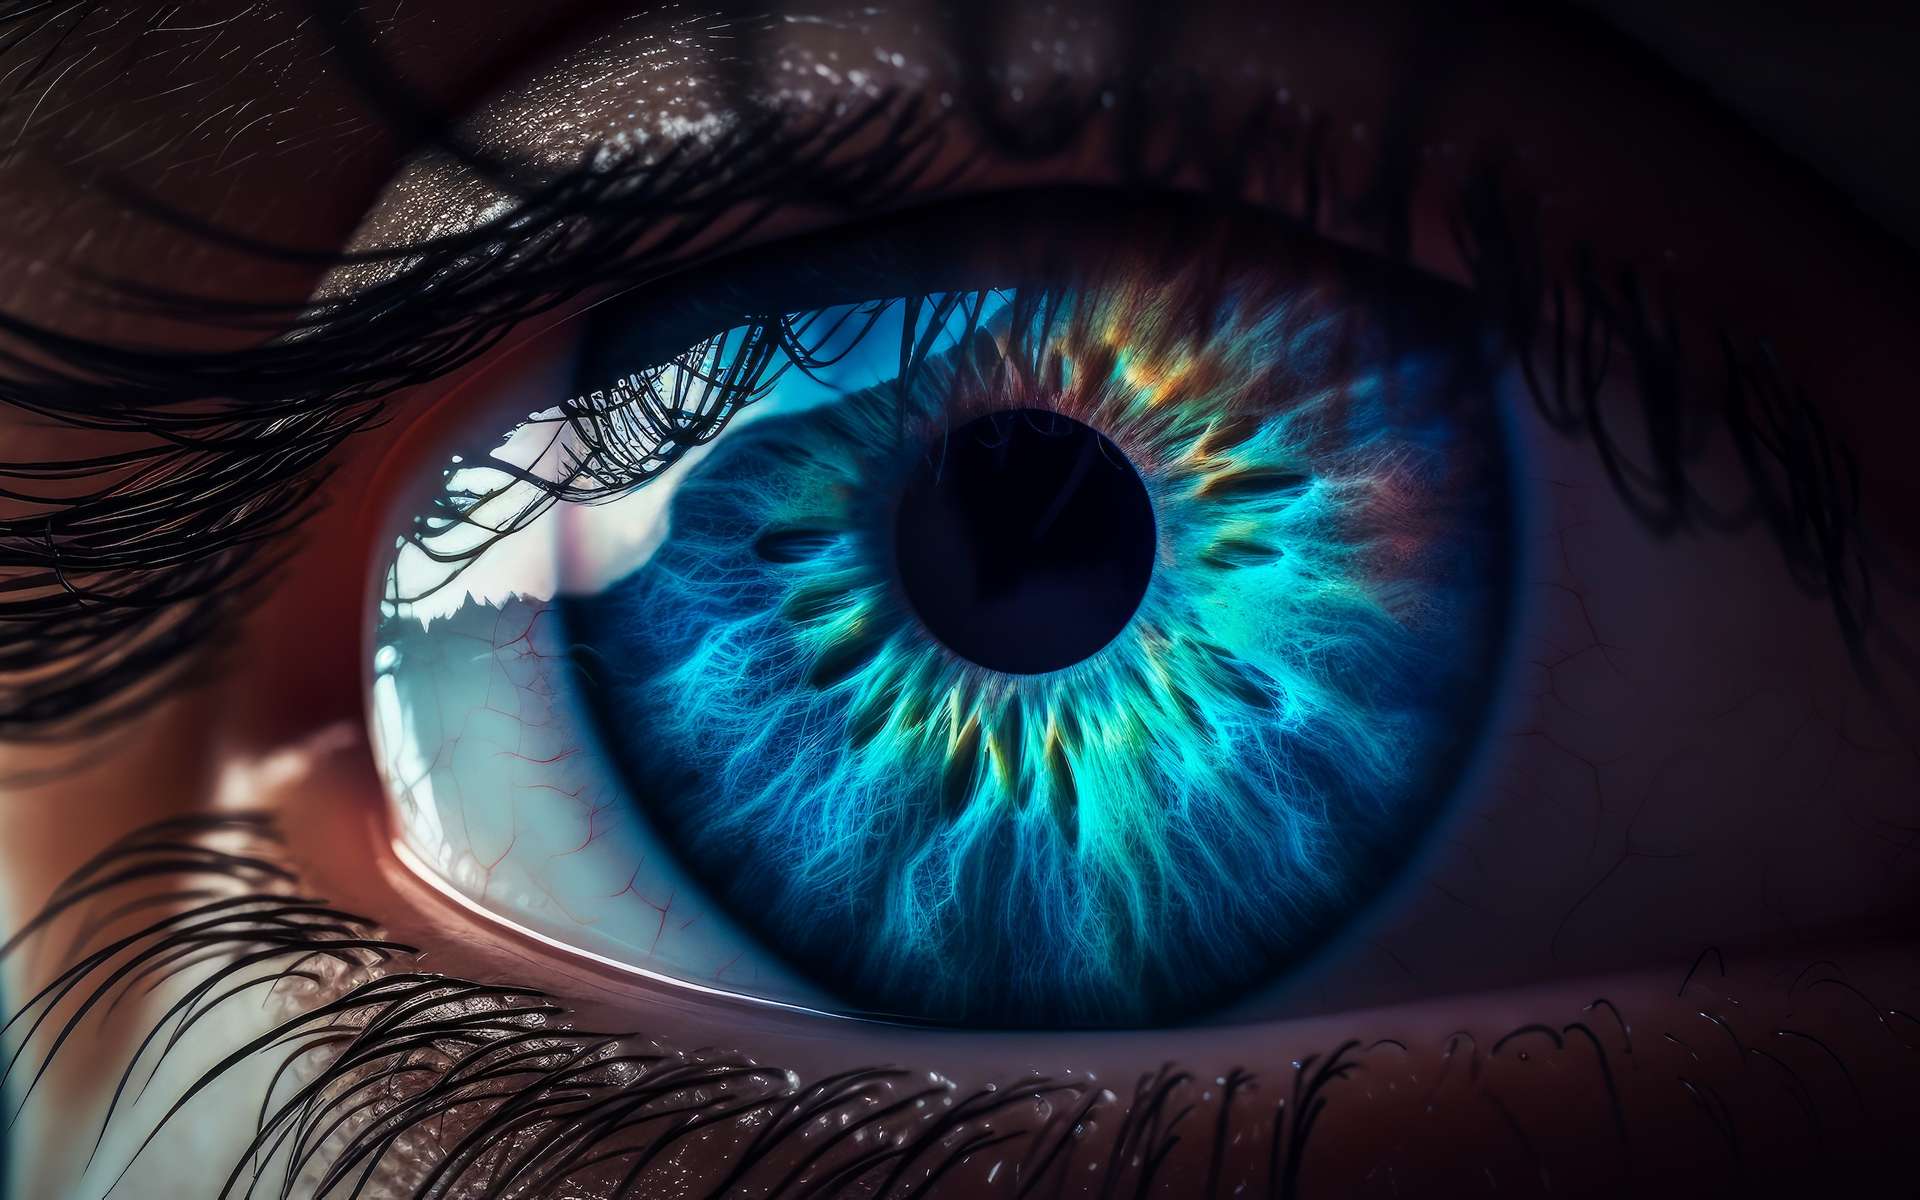 Les scientifiques peuvent reconstituer en 3D une scène qui se reflète sur vos yeux !